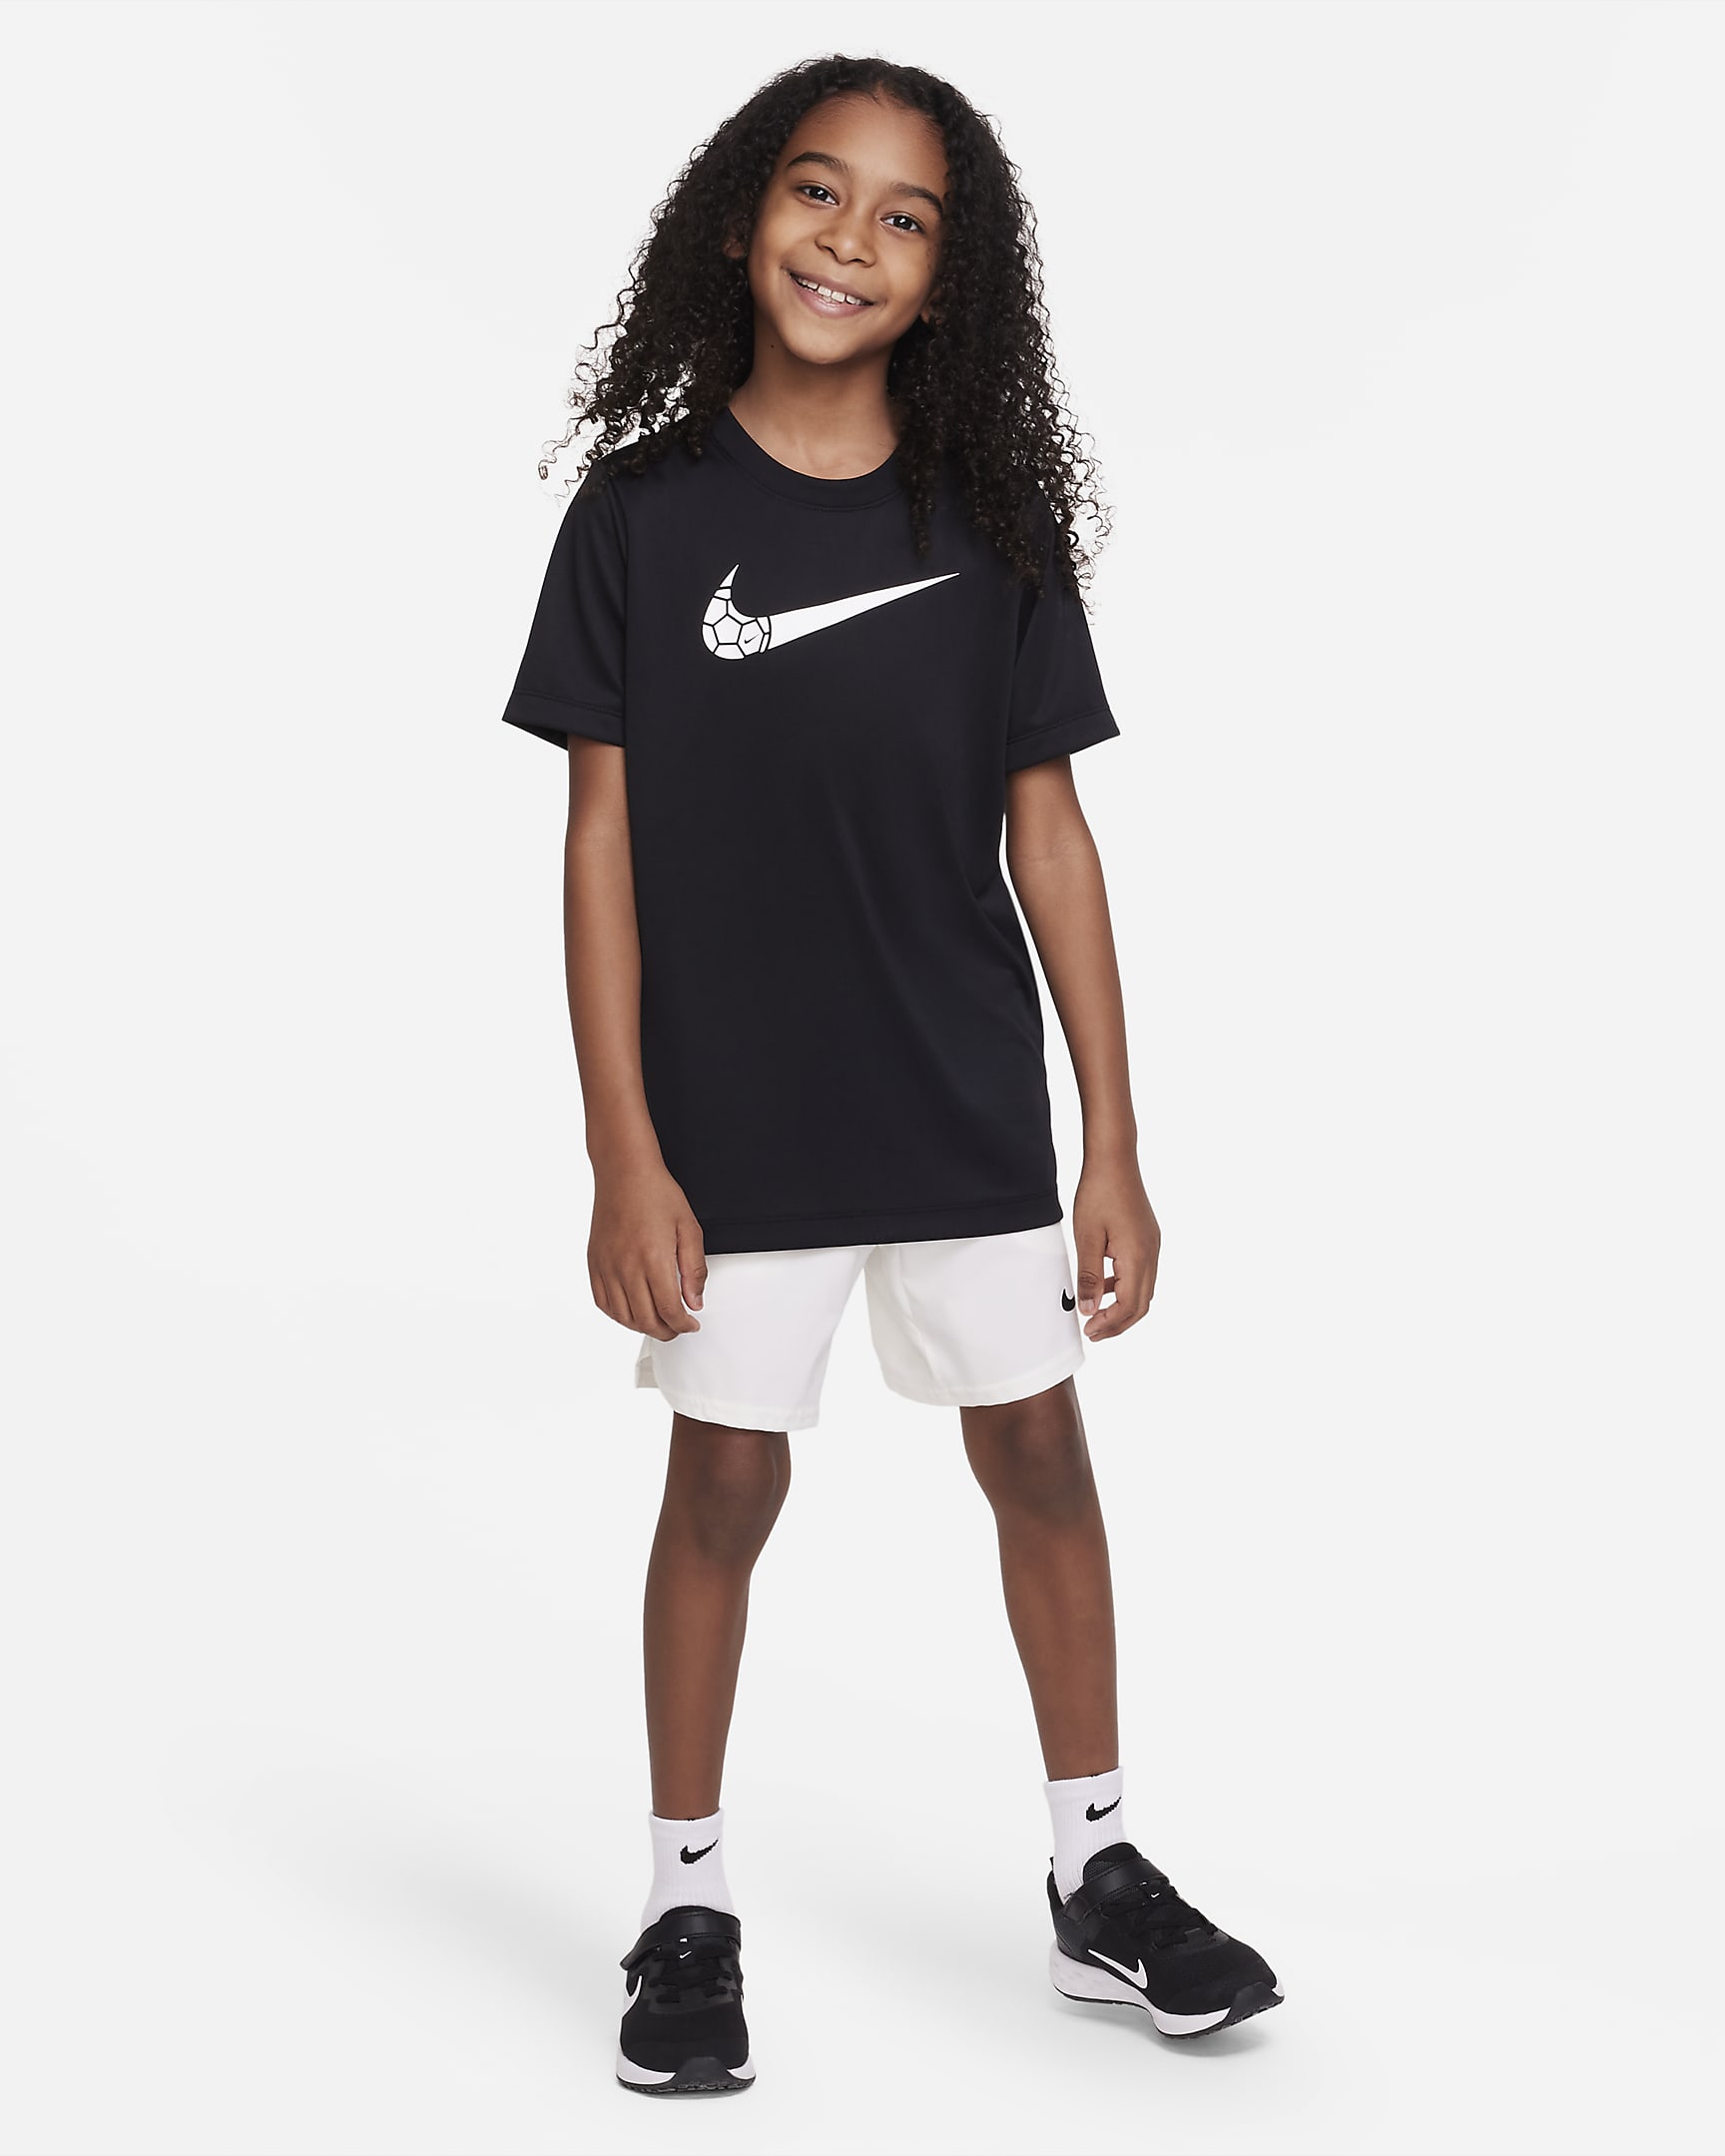 Nike Dri-FIT Older Kids' T-Shirt - Black